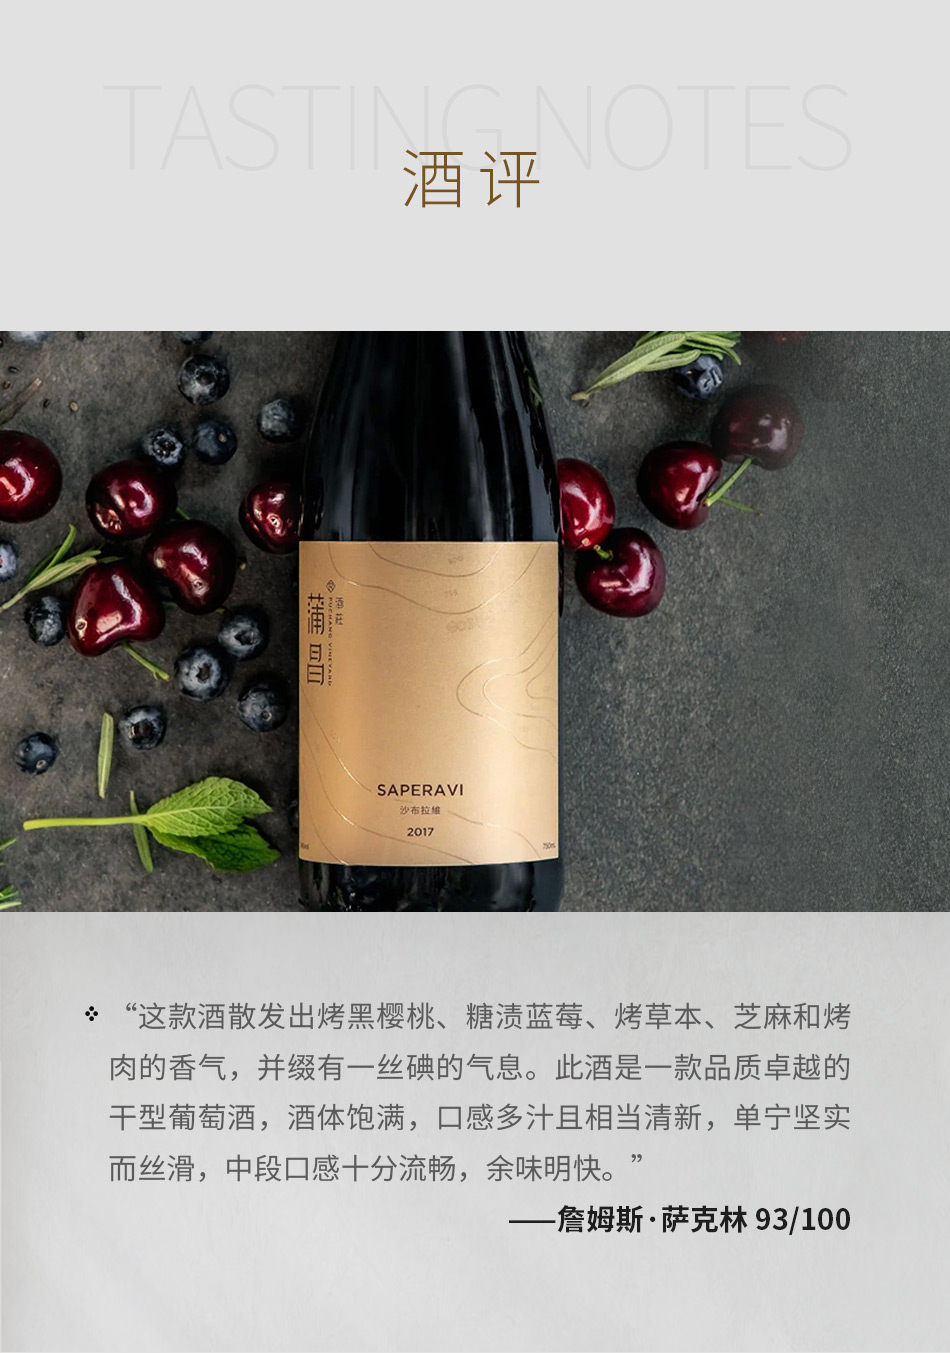 2017年蒲昌酒庄沙布拉维干红葡萄酒